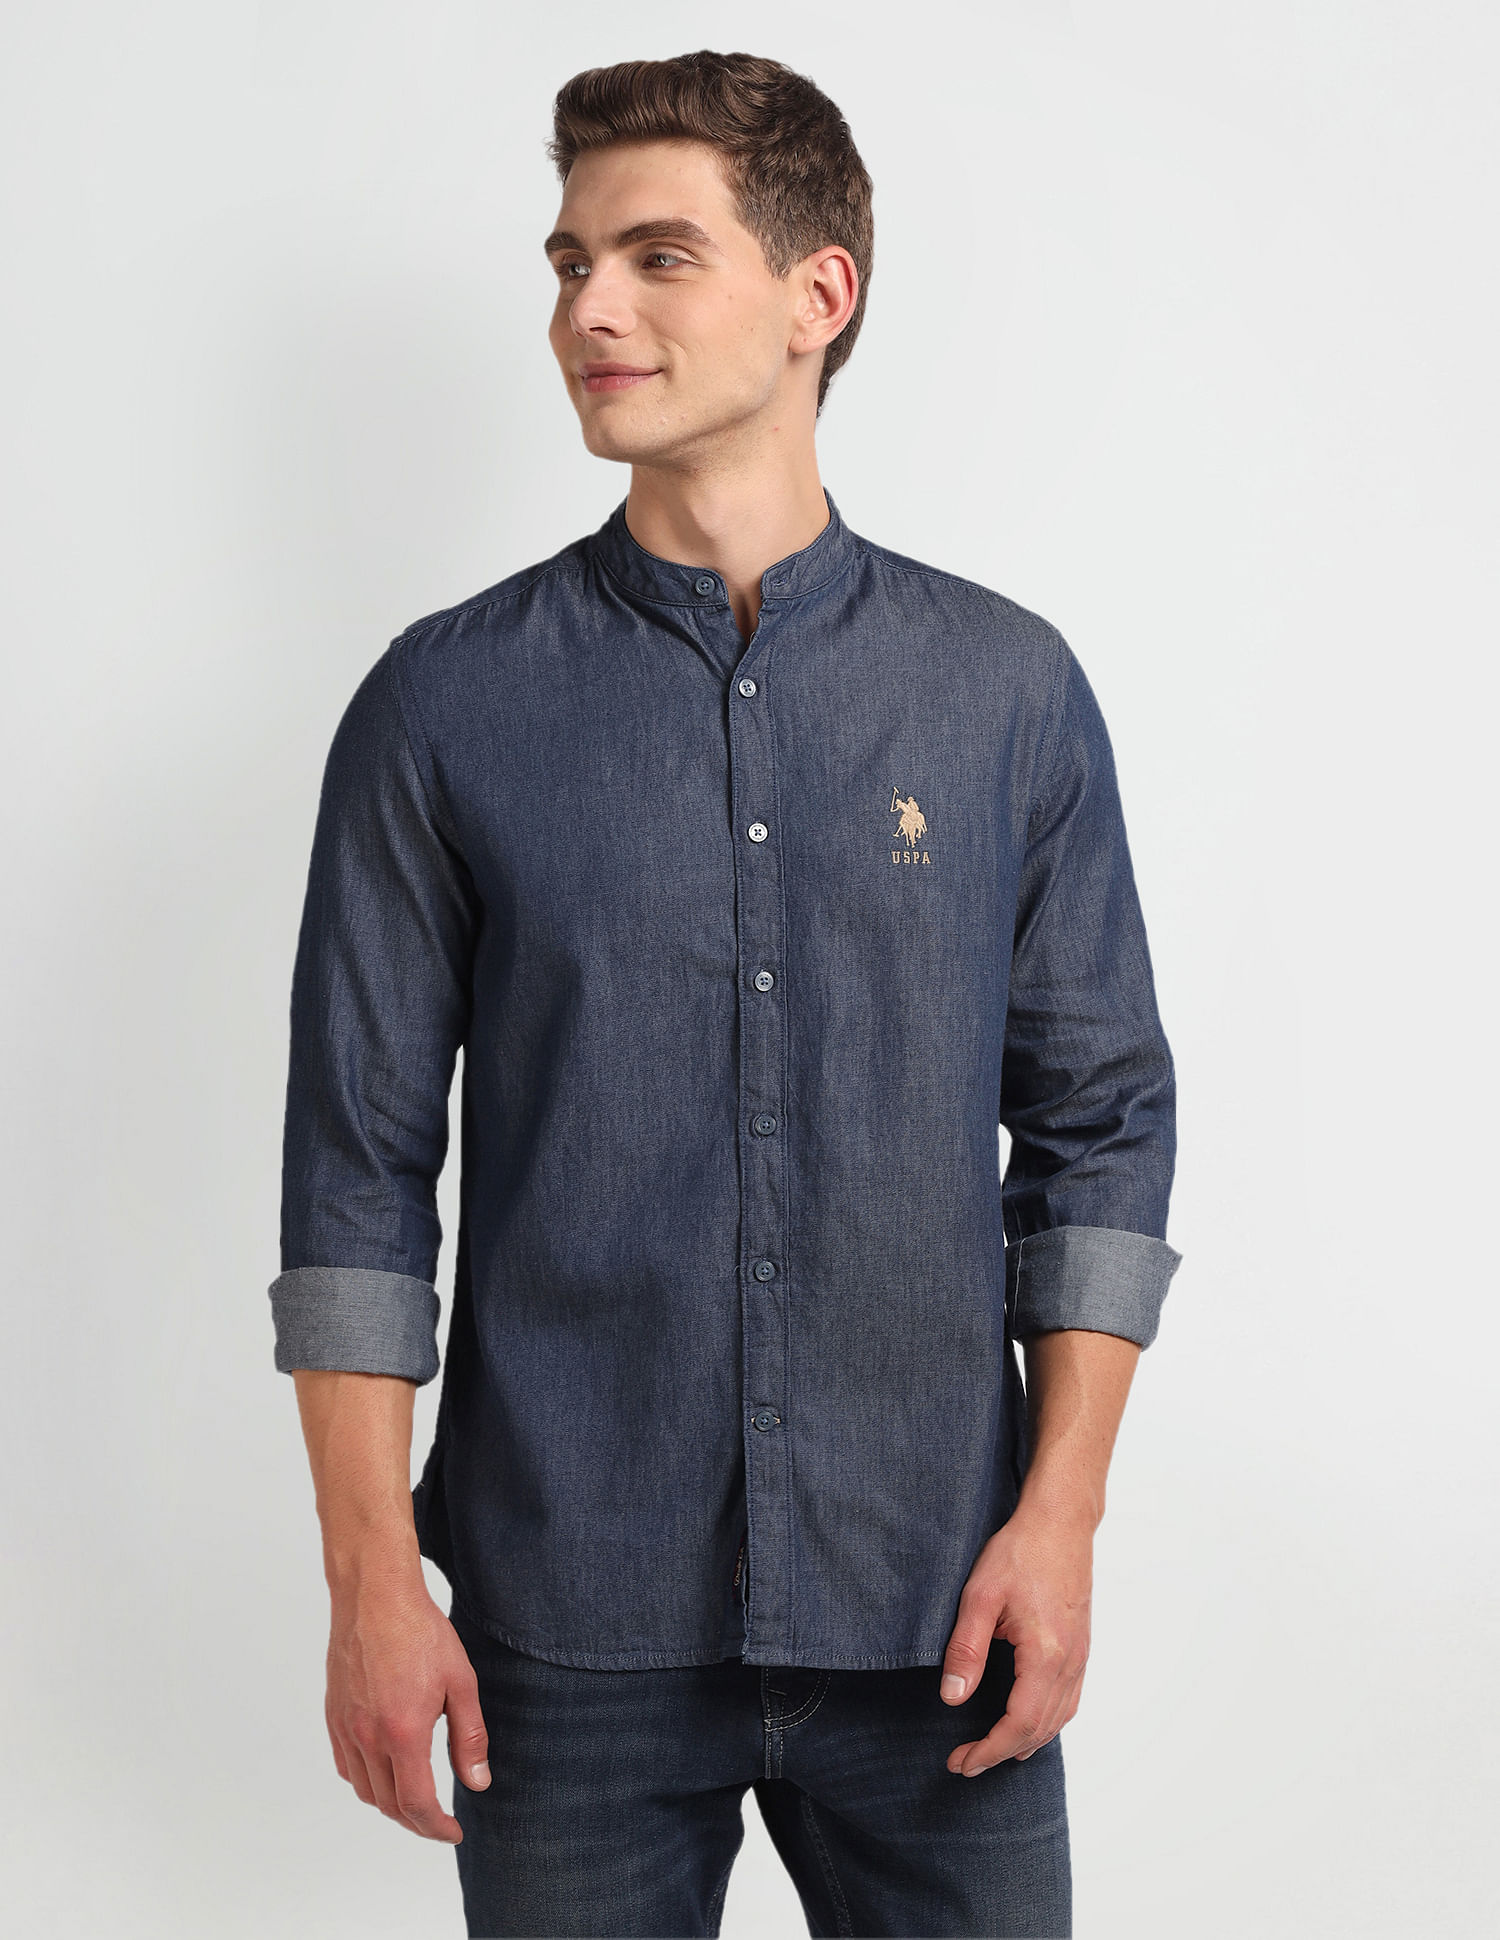 Blue Regular Fit Men's Denim Casual Shirt - Buy Online in India @ Mehar